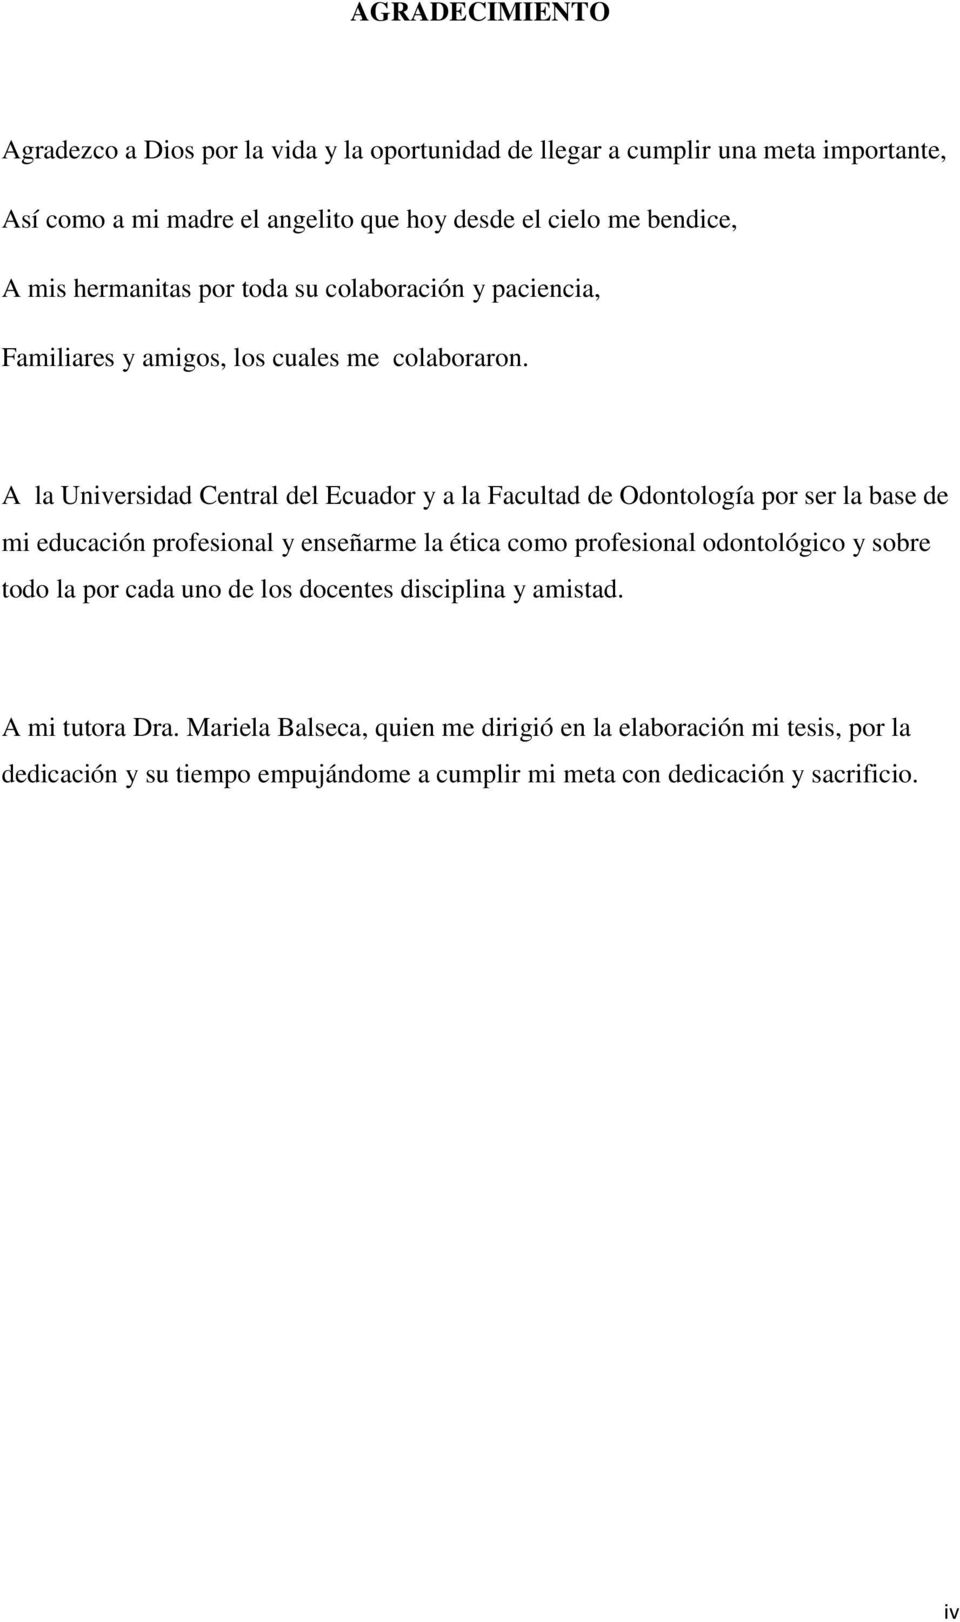 A la Universidad Central del Ecuador y a la Facultad de Odontología por ser la base de mi educación profesional y enseñarme la ética como profesional odontológico y